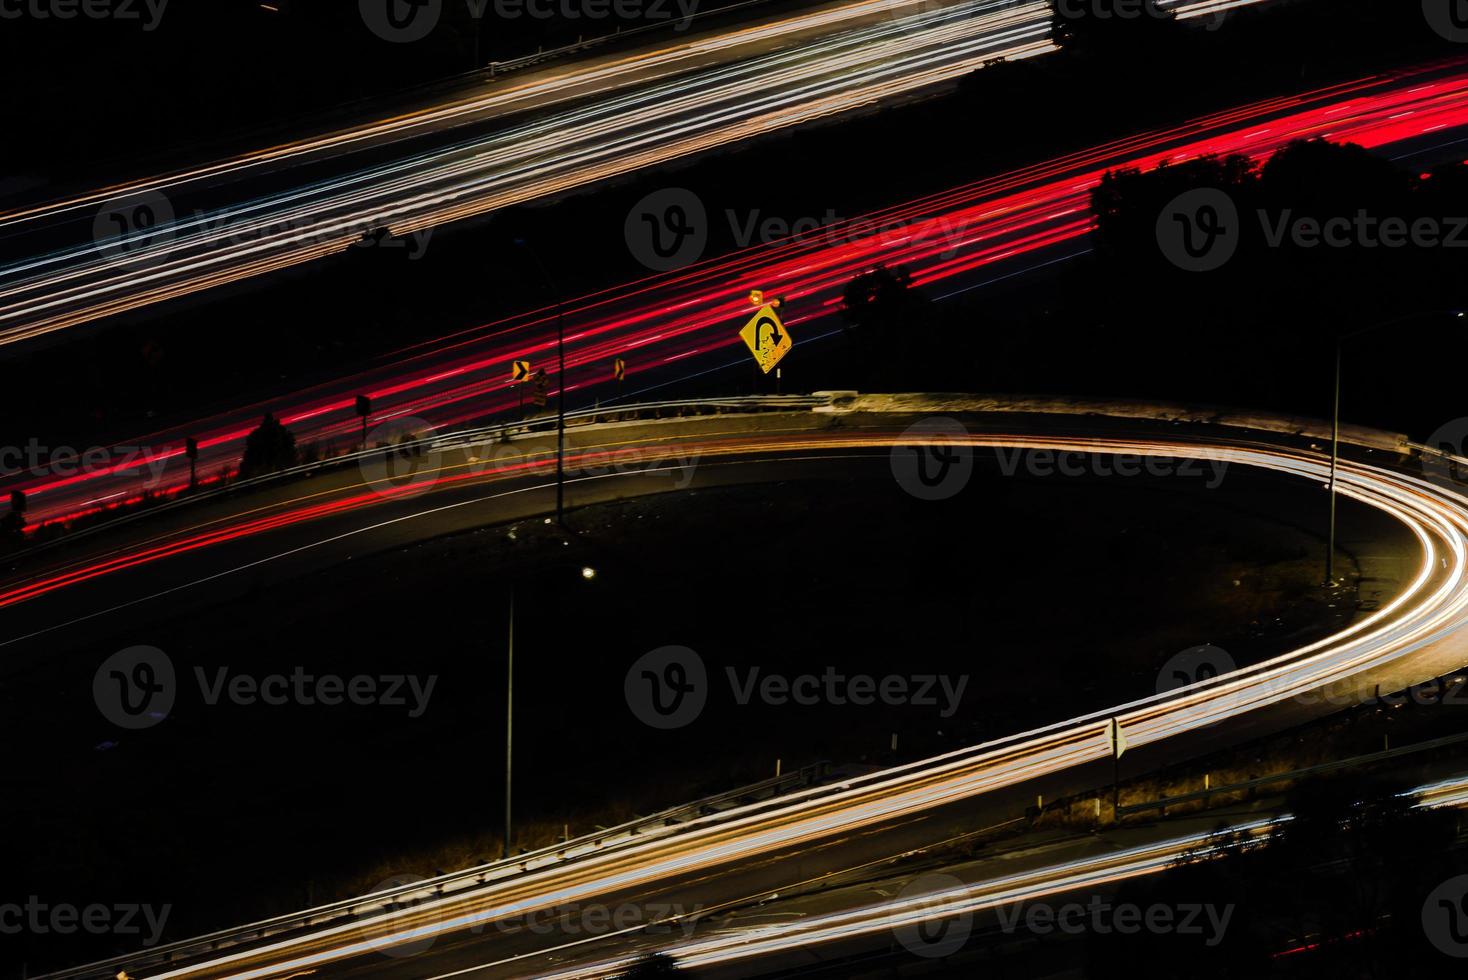 senderos de luz larga exposición autopista oakland california foto